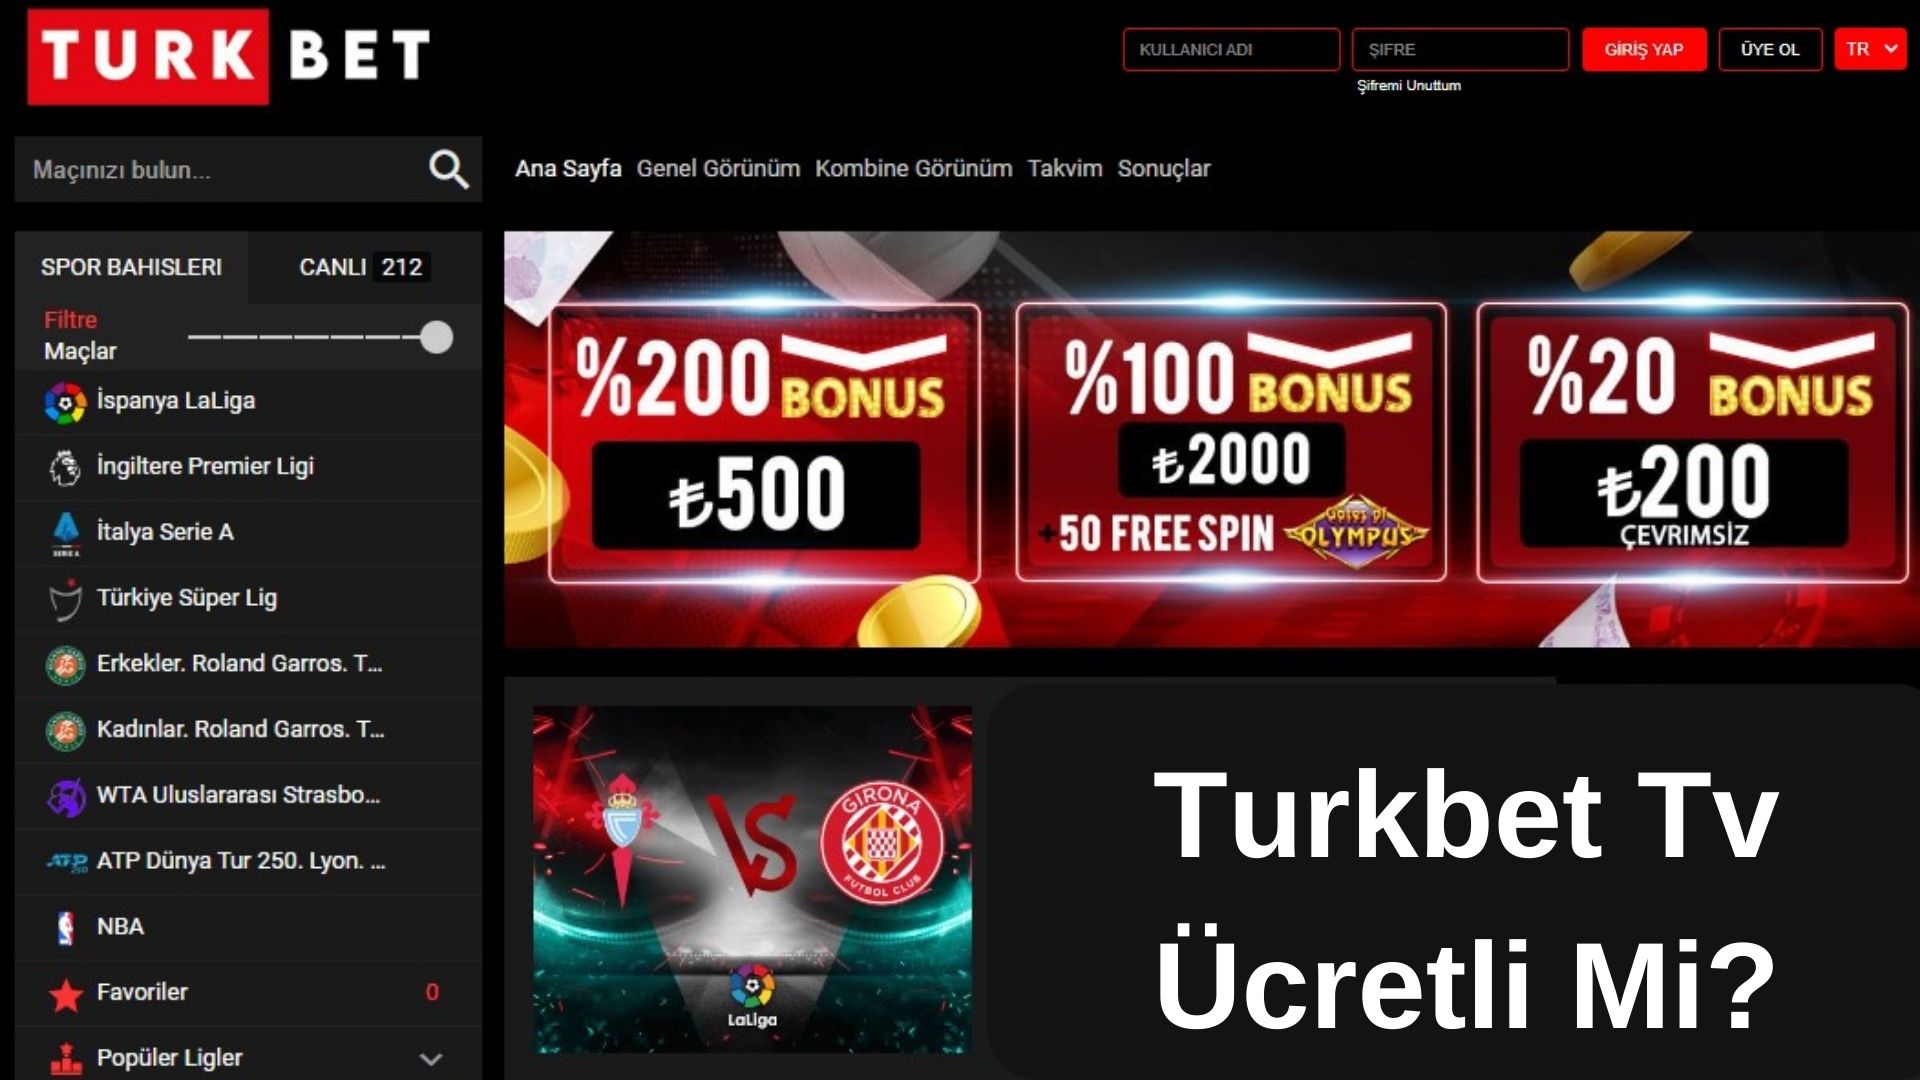 Turkbet Tv Ücretli Mi